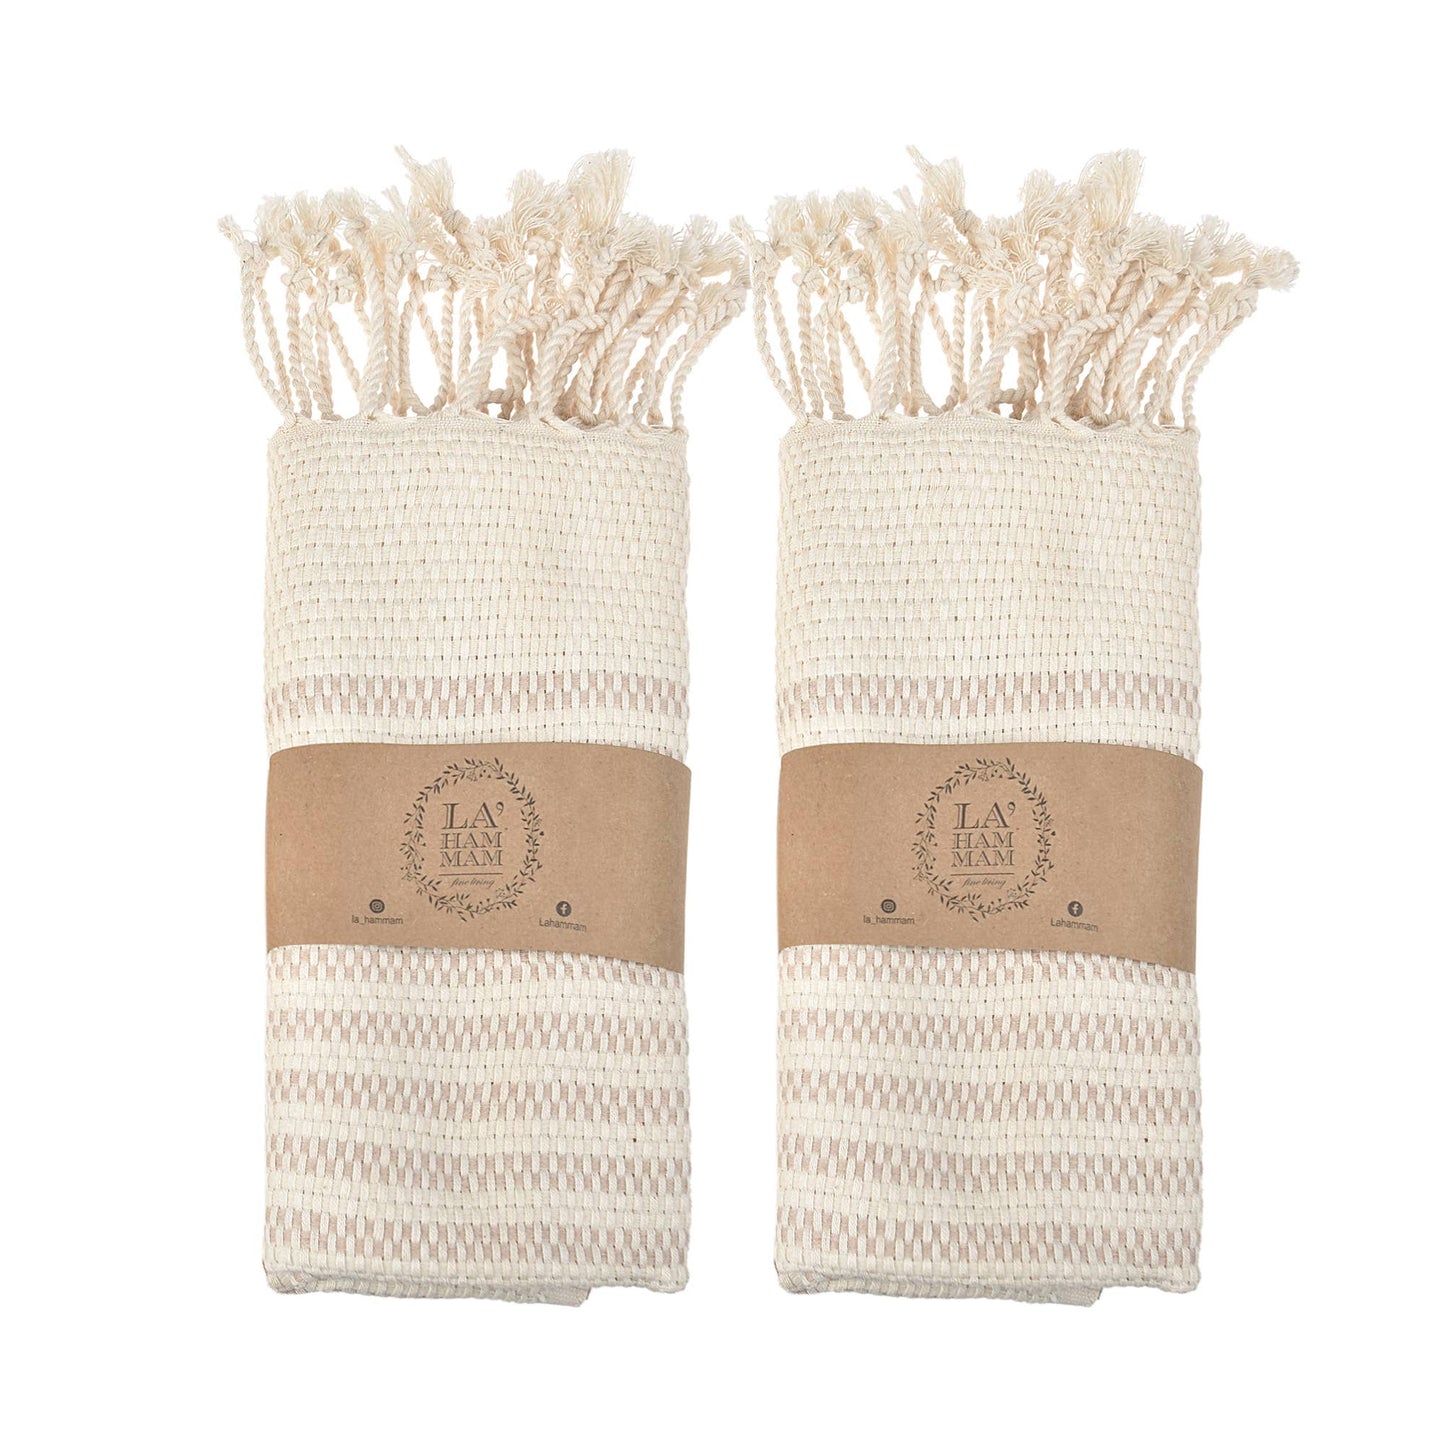 Shiran Turkish Cotton Kitchen / Hand Towel 18x36inches: Beige